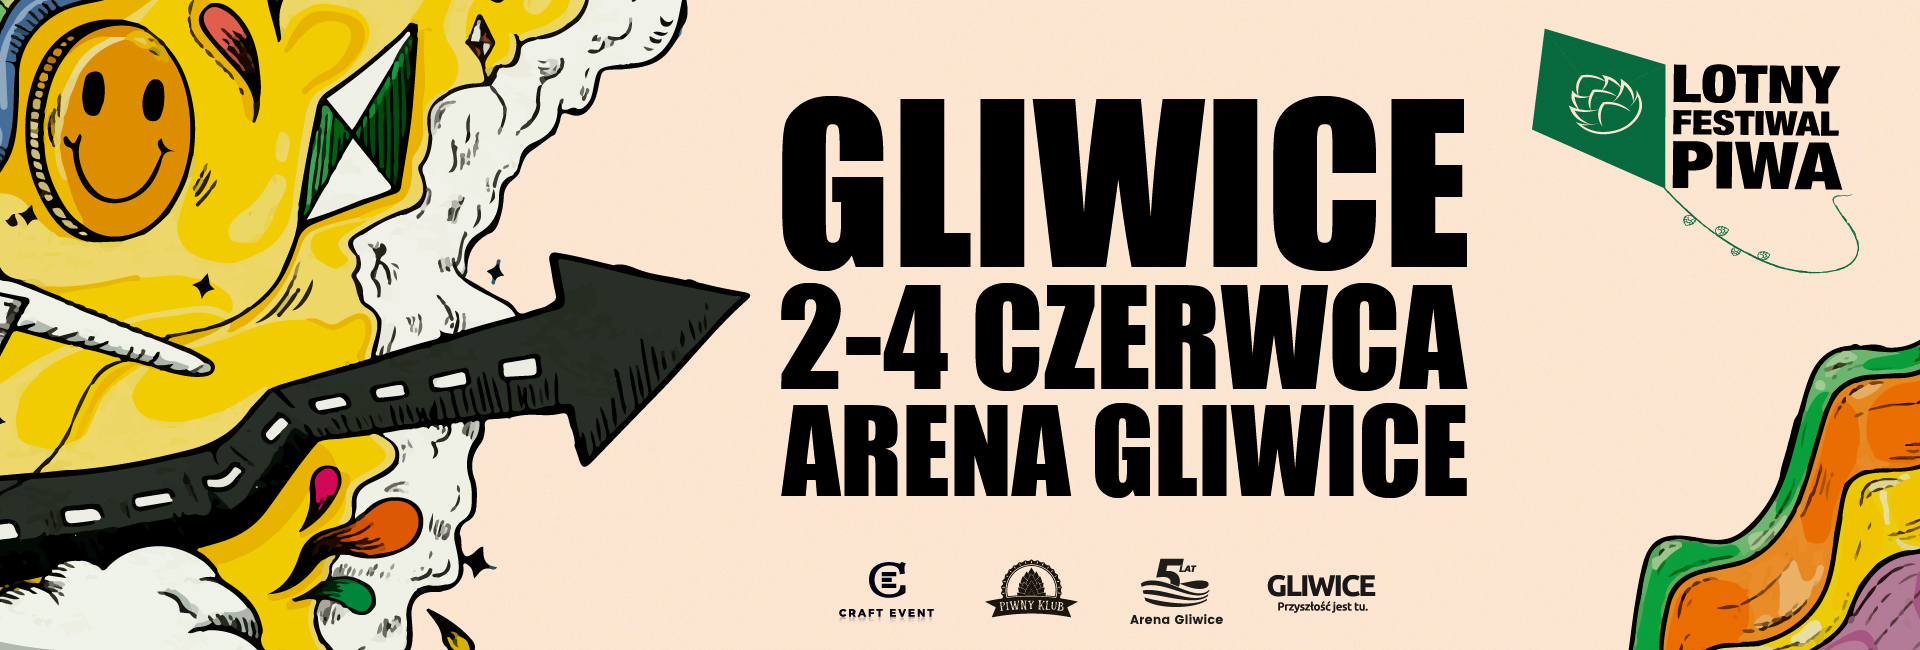 Gliwicki Lotny Festiwal Piwa powraca!